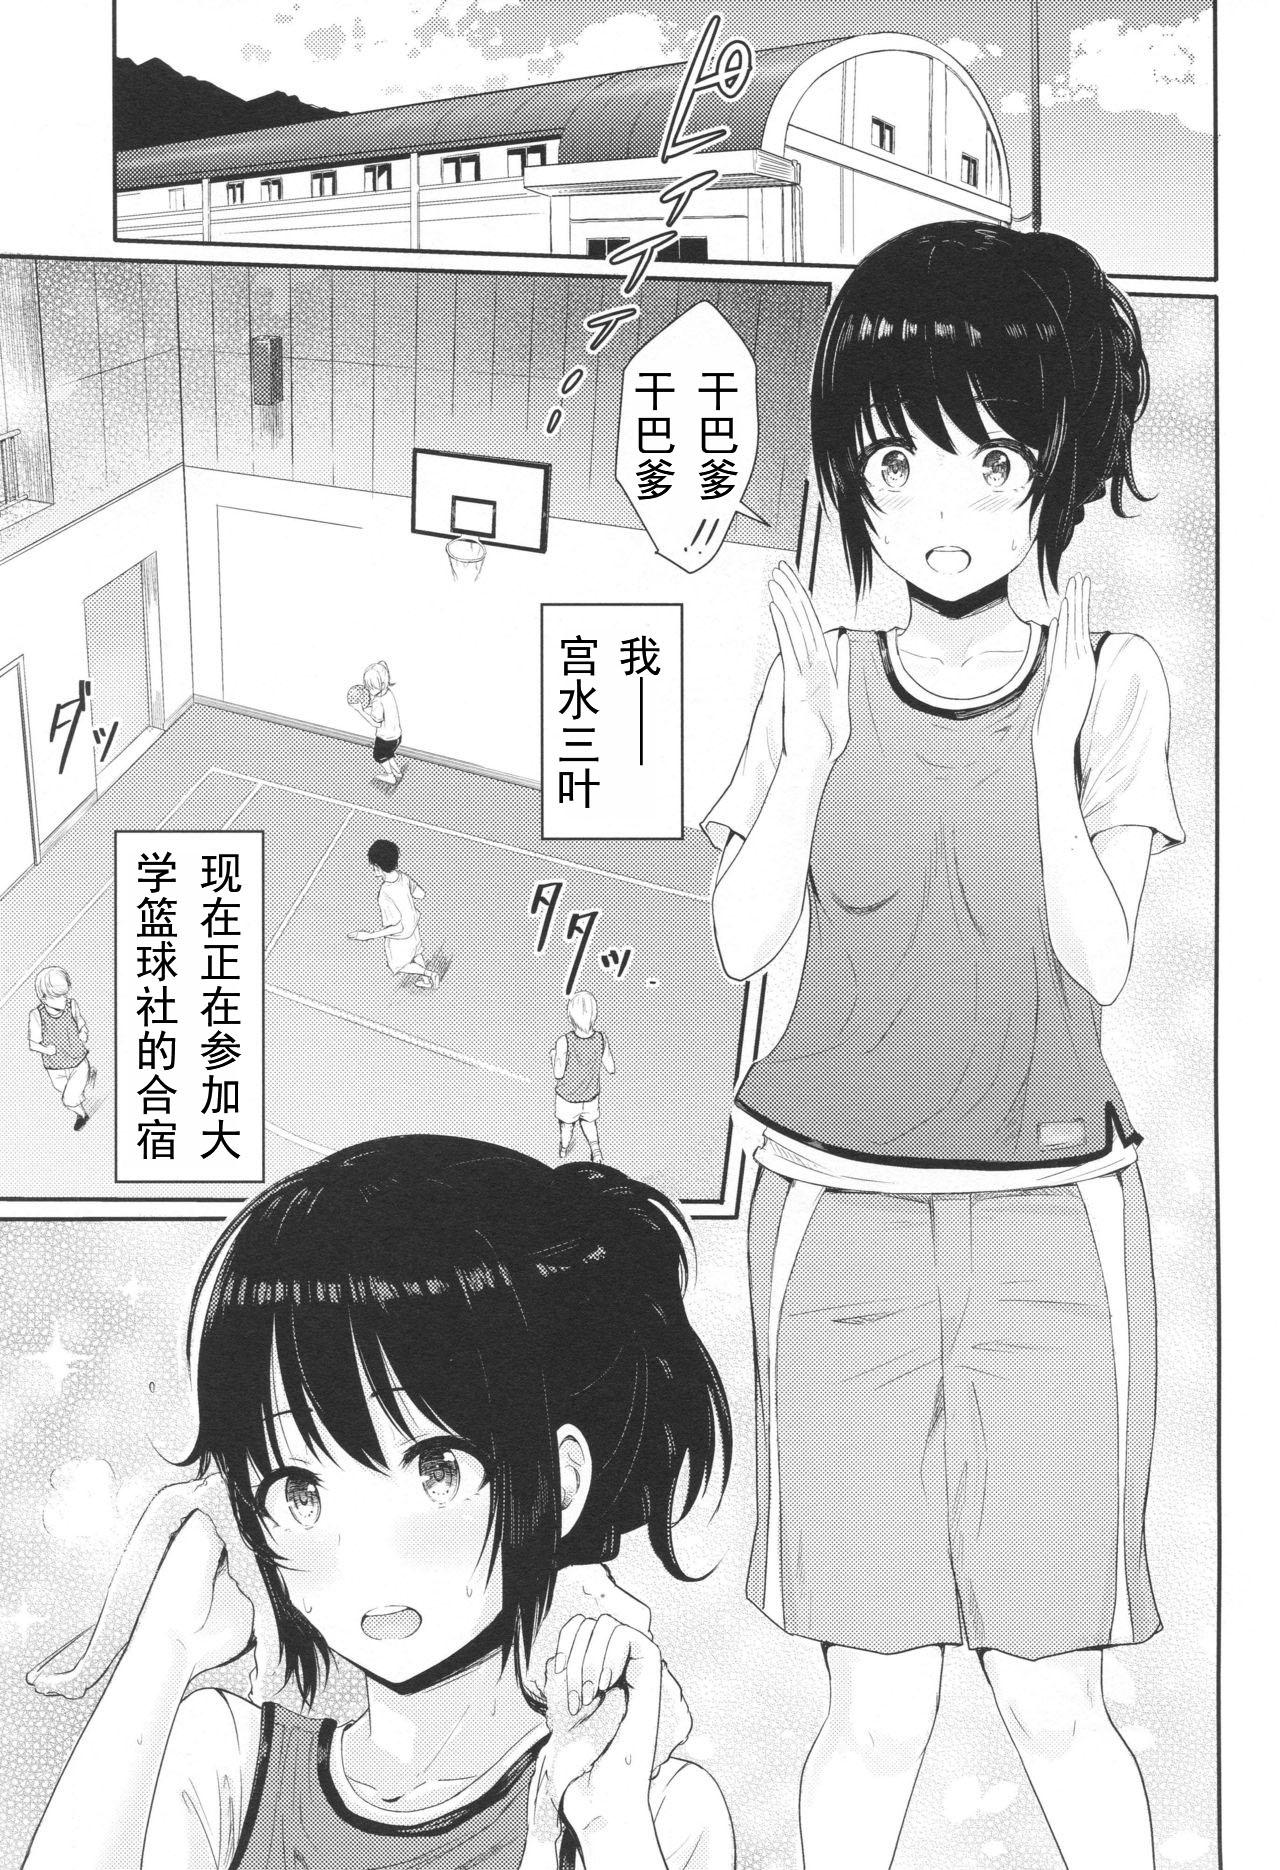 Real Amateurs Mitsuha - Kimi no na wa. Pregnant - Page 2